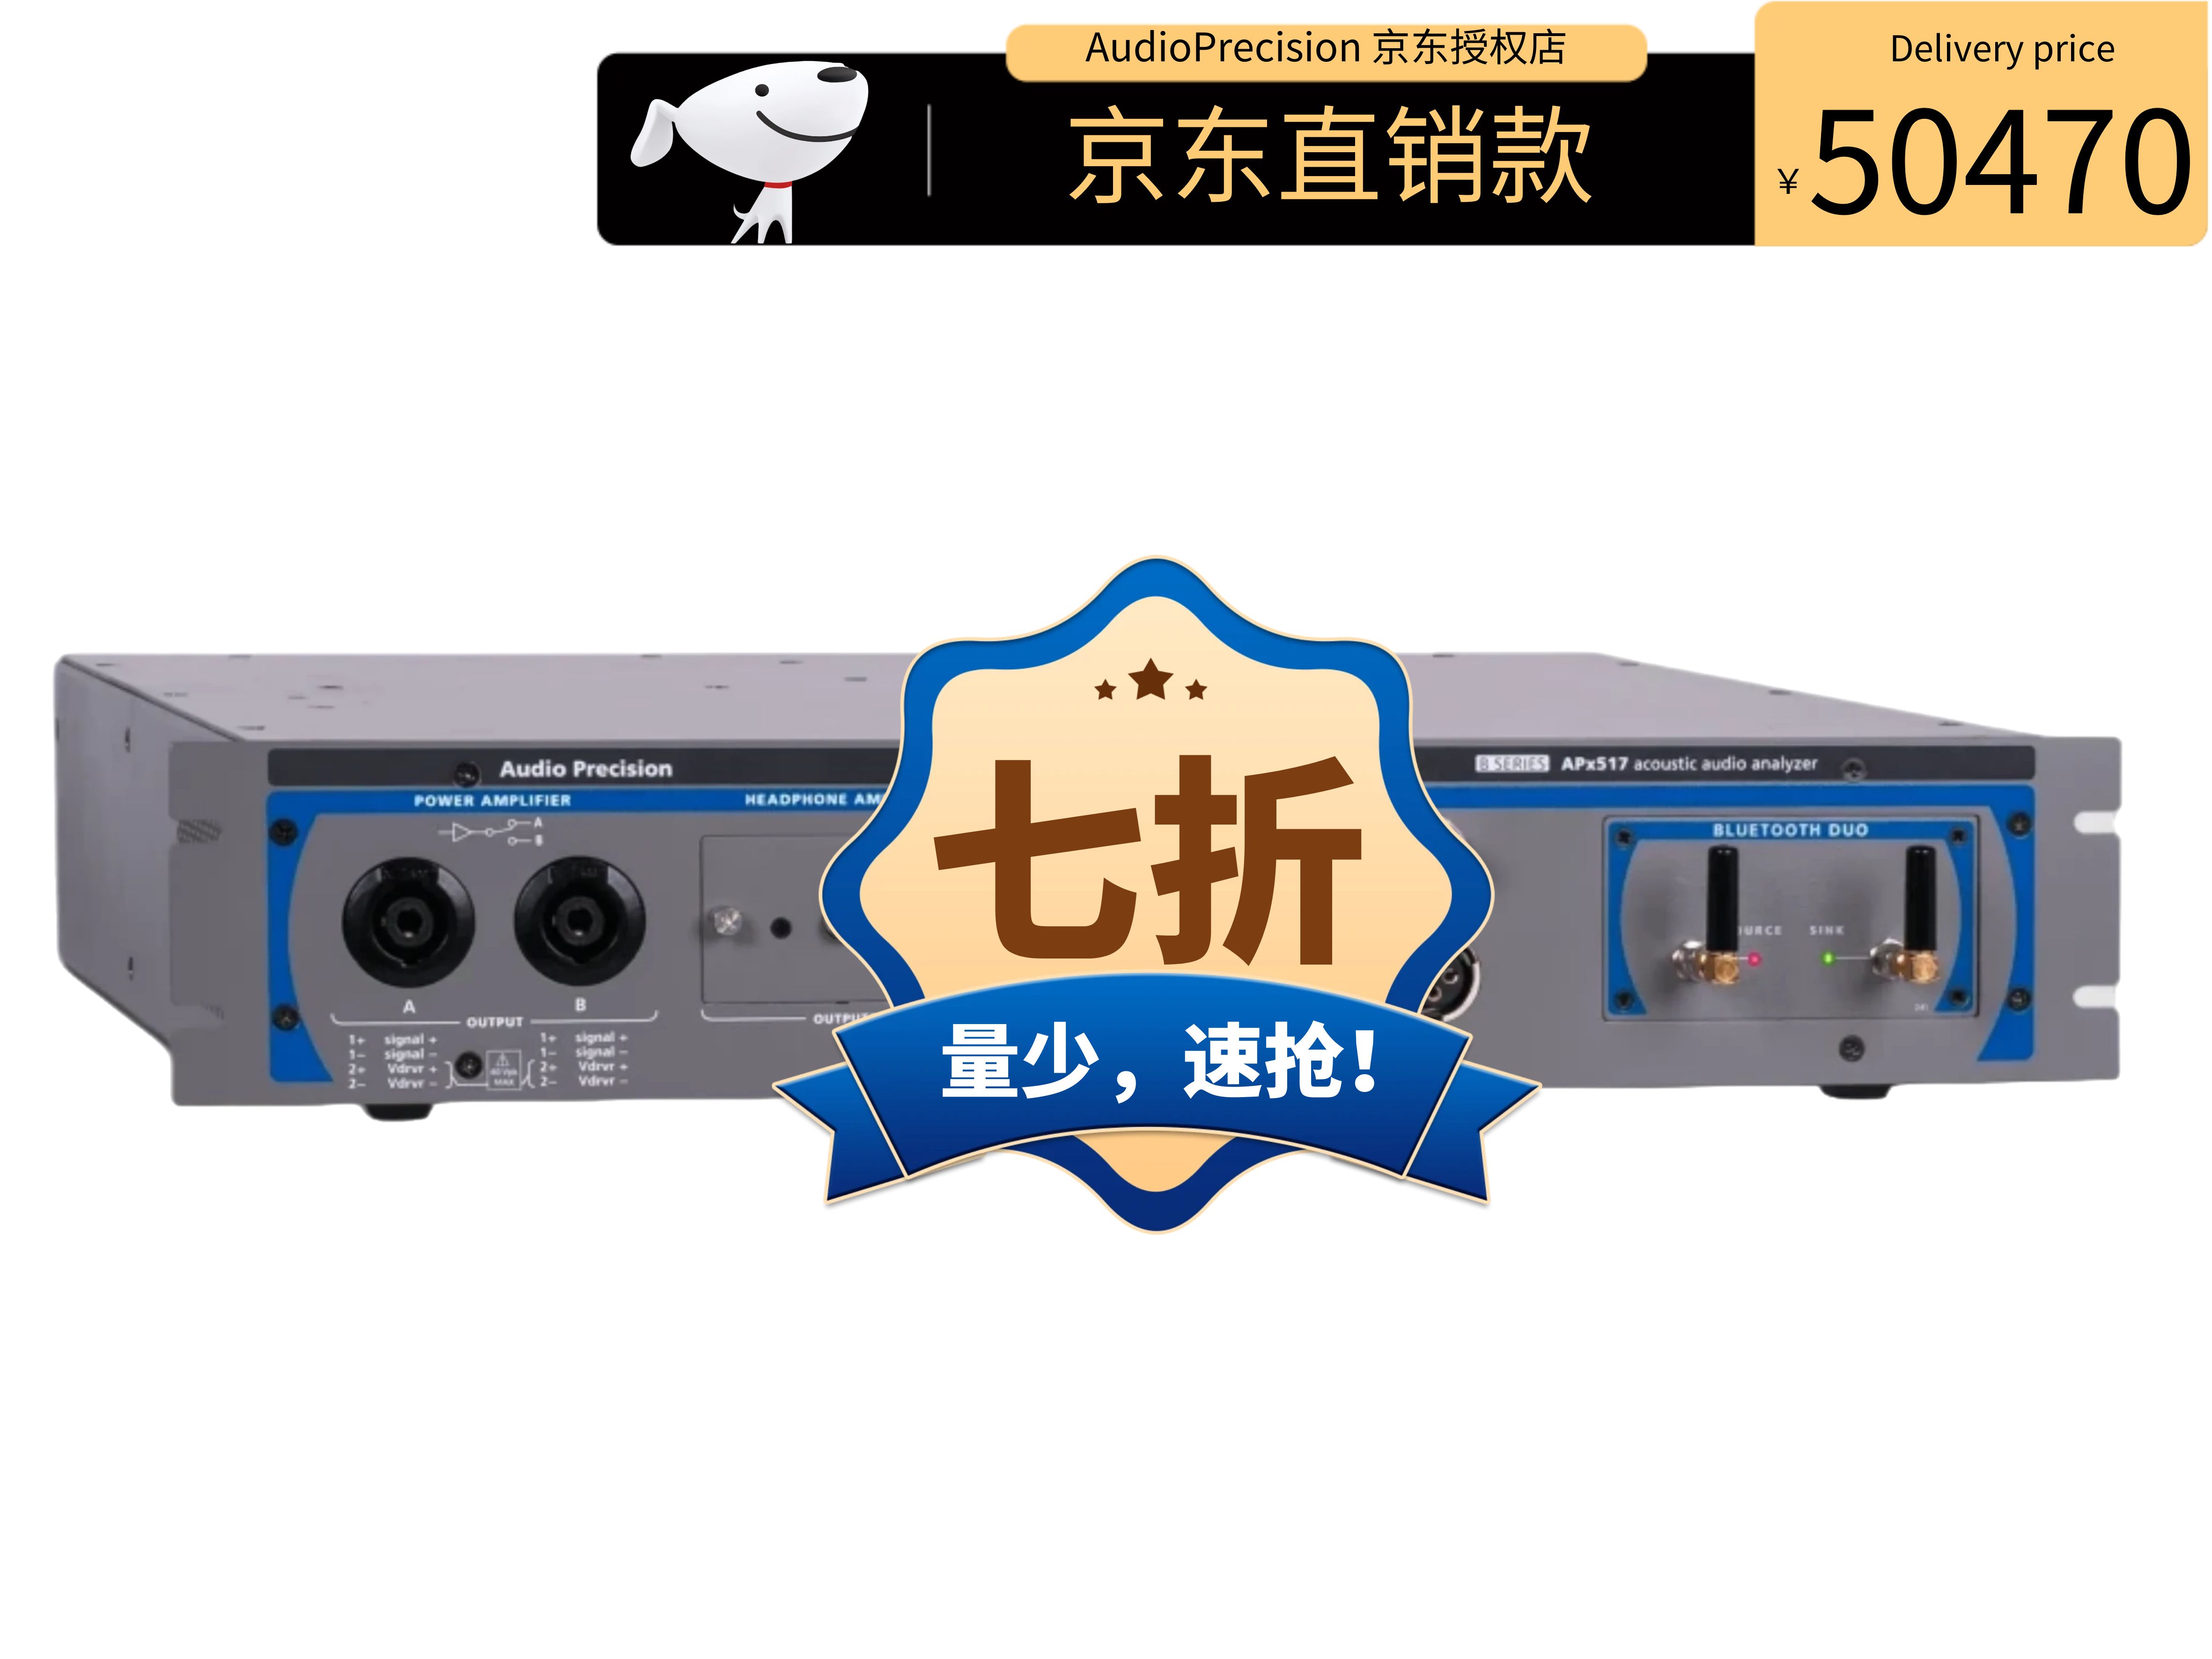 AudioPrecision APx517B 音频分析仪